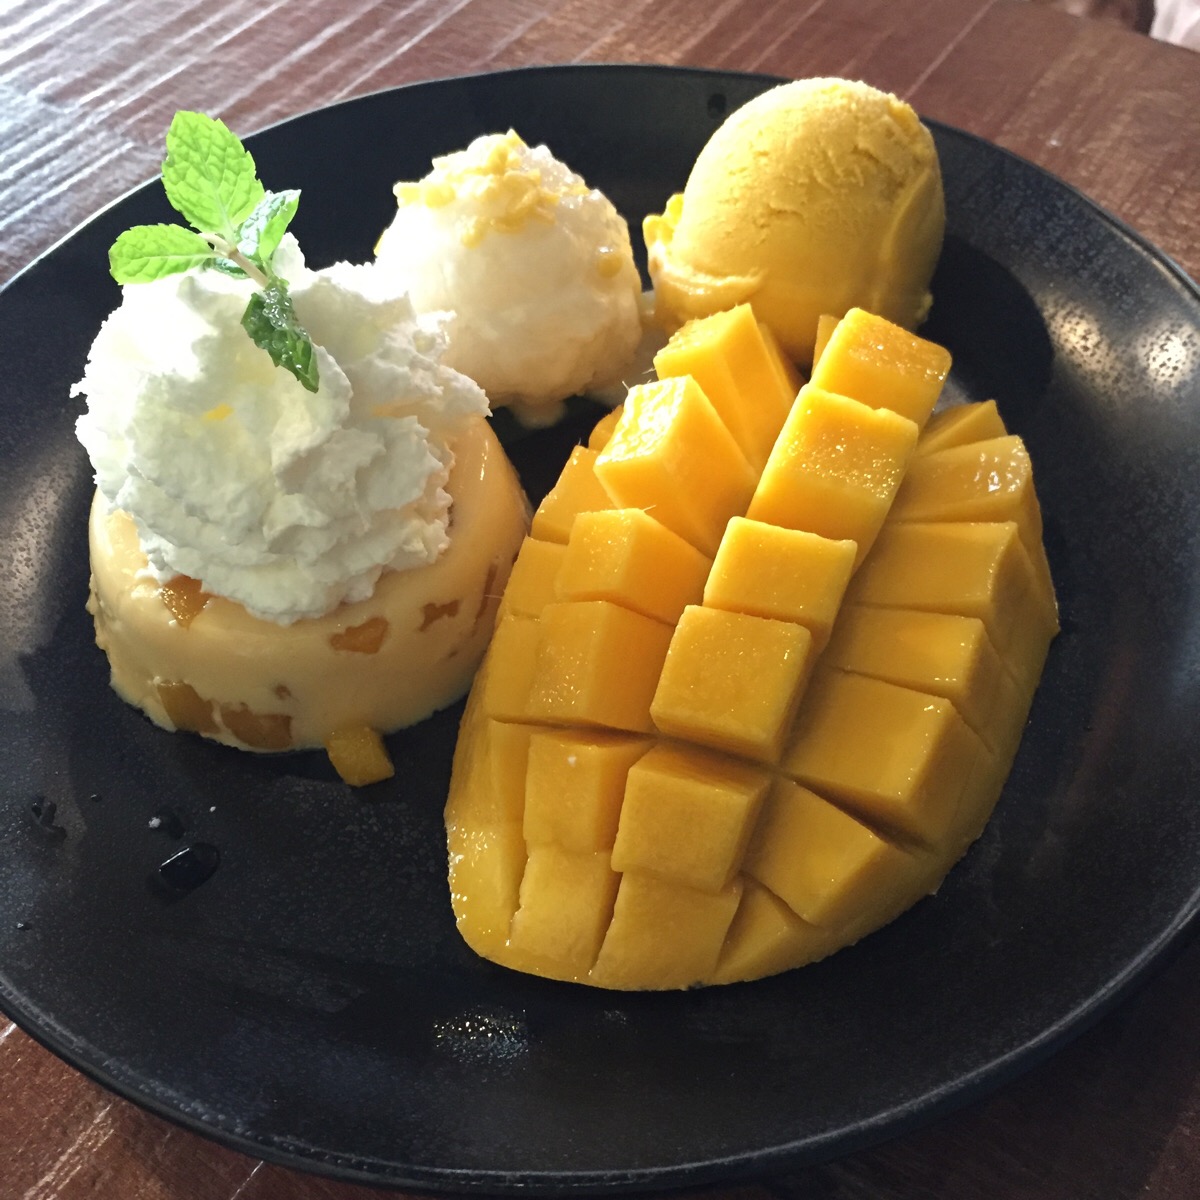 【泰国】大街小巷随处可见的芒果甜品